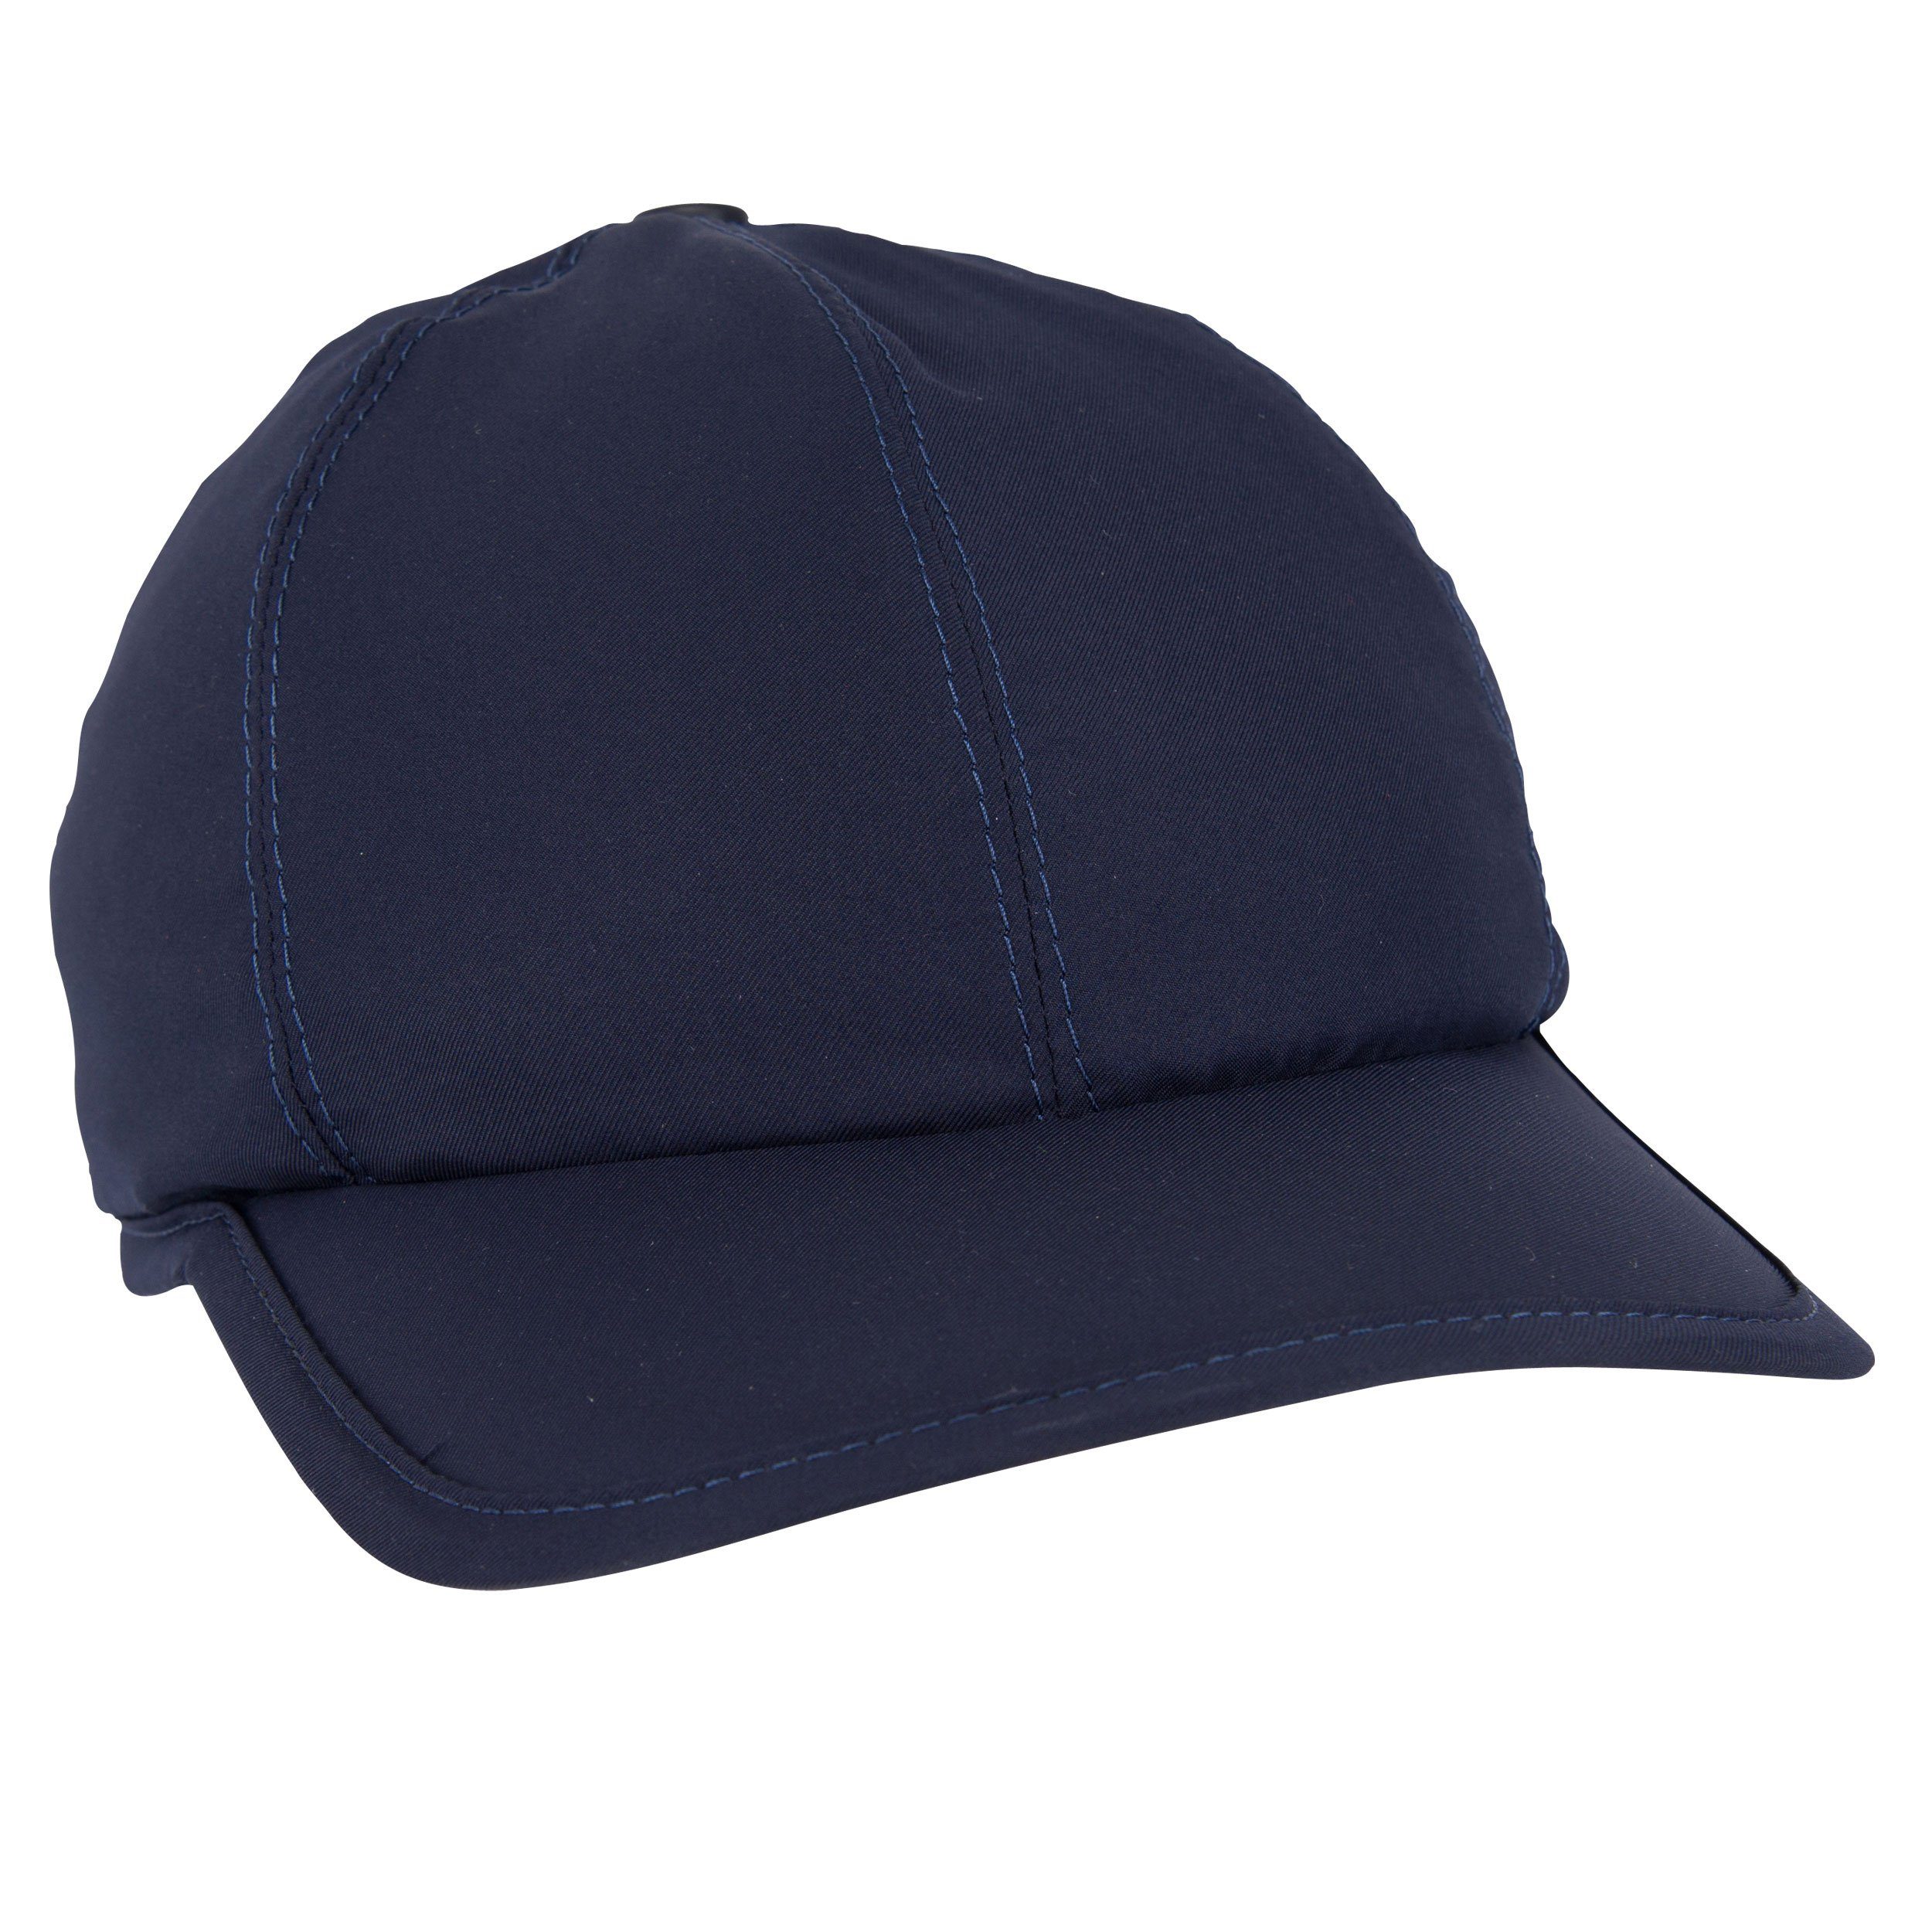 E.COOLINE Baseball Cap - aktiv kühlende Mütze - Kühlung durch Aktivierung mit Wasser Klimaanlage zum Anziehen Blau